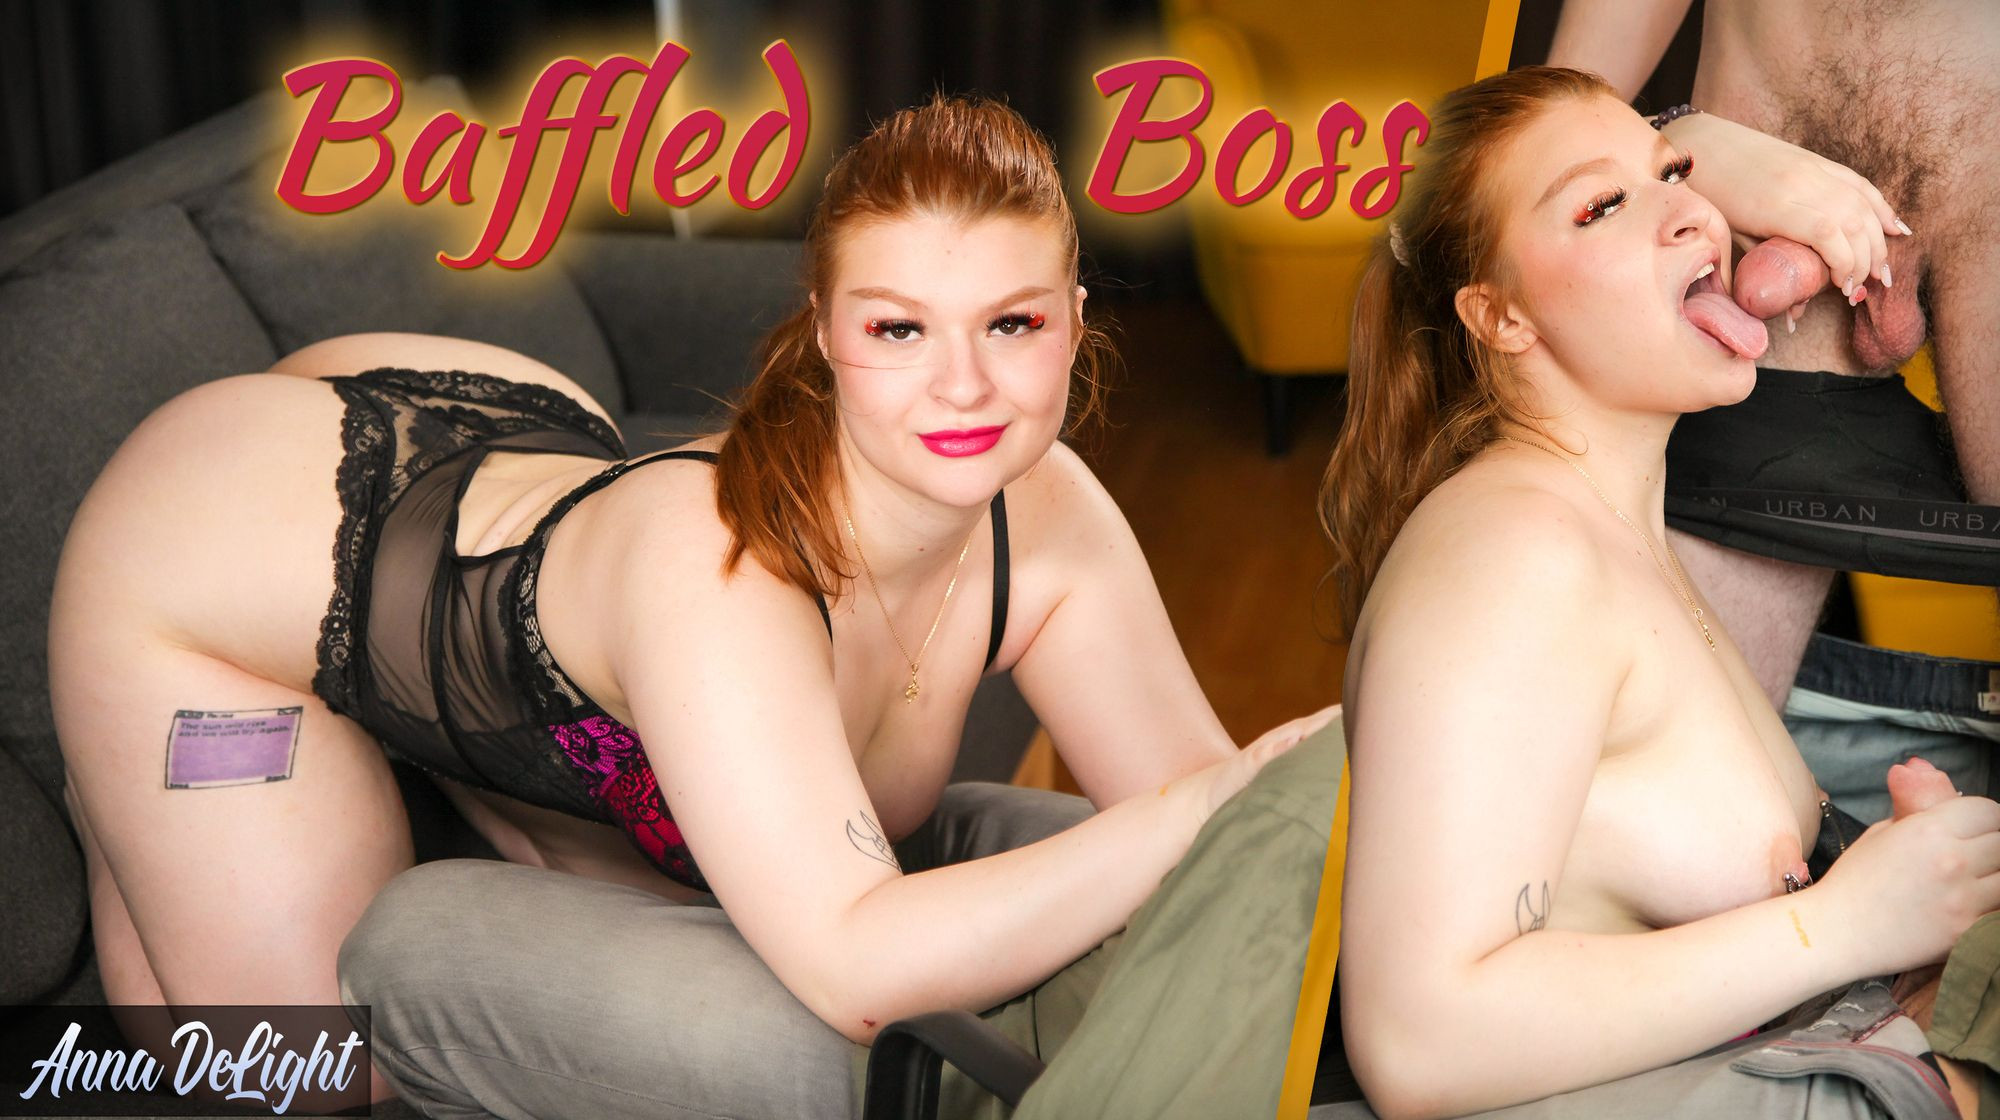 Baffled Boss: Anna Delight Slideshow